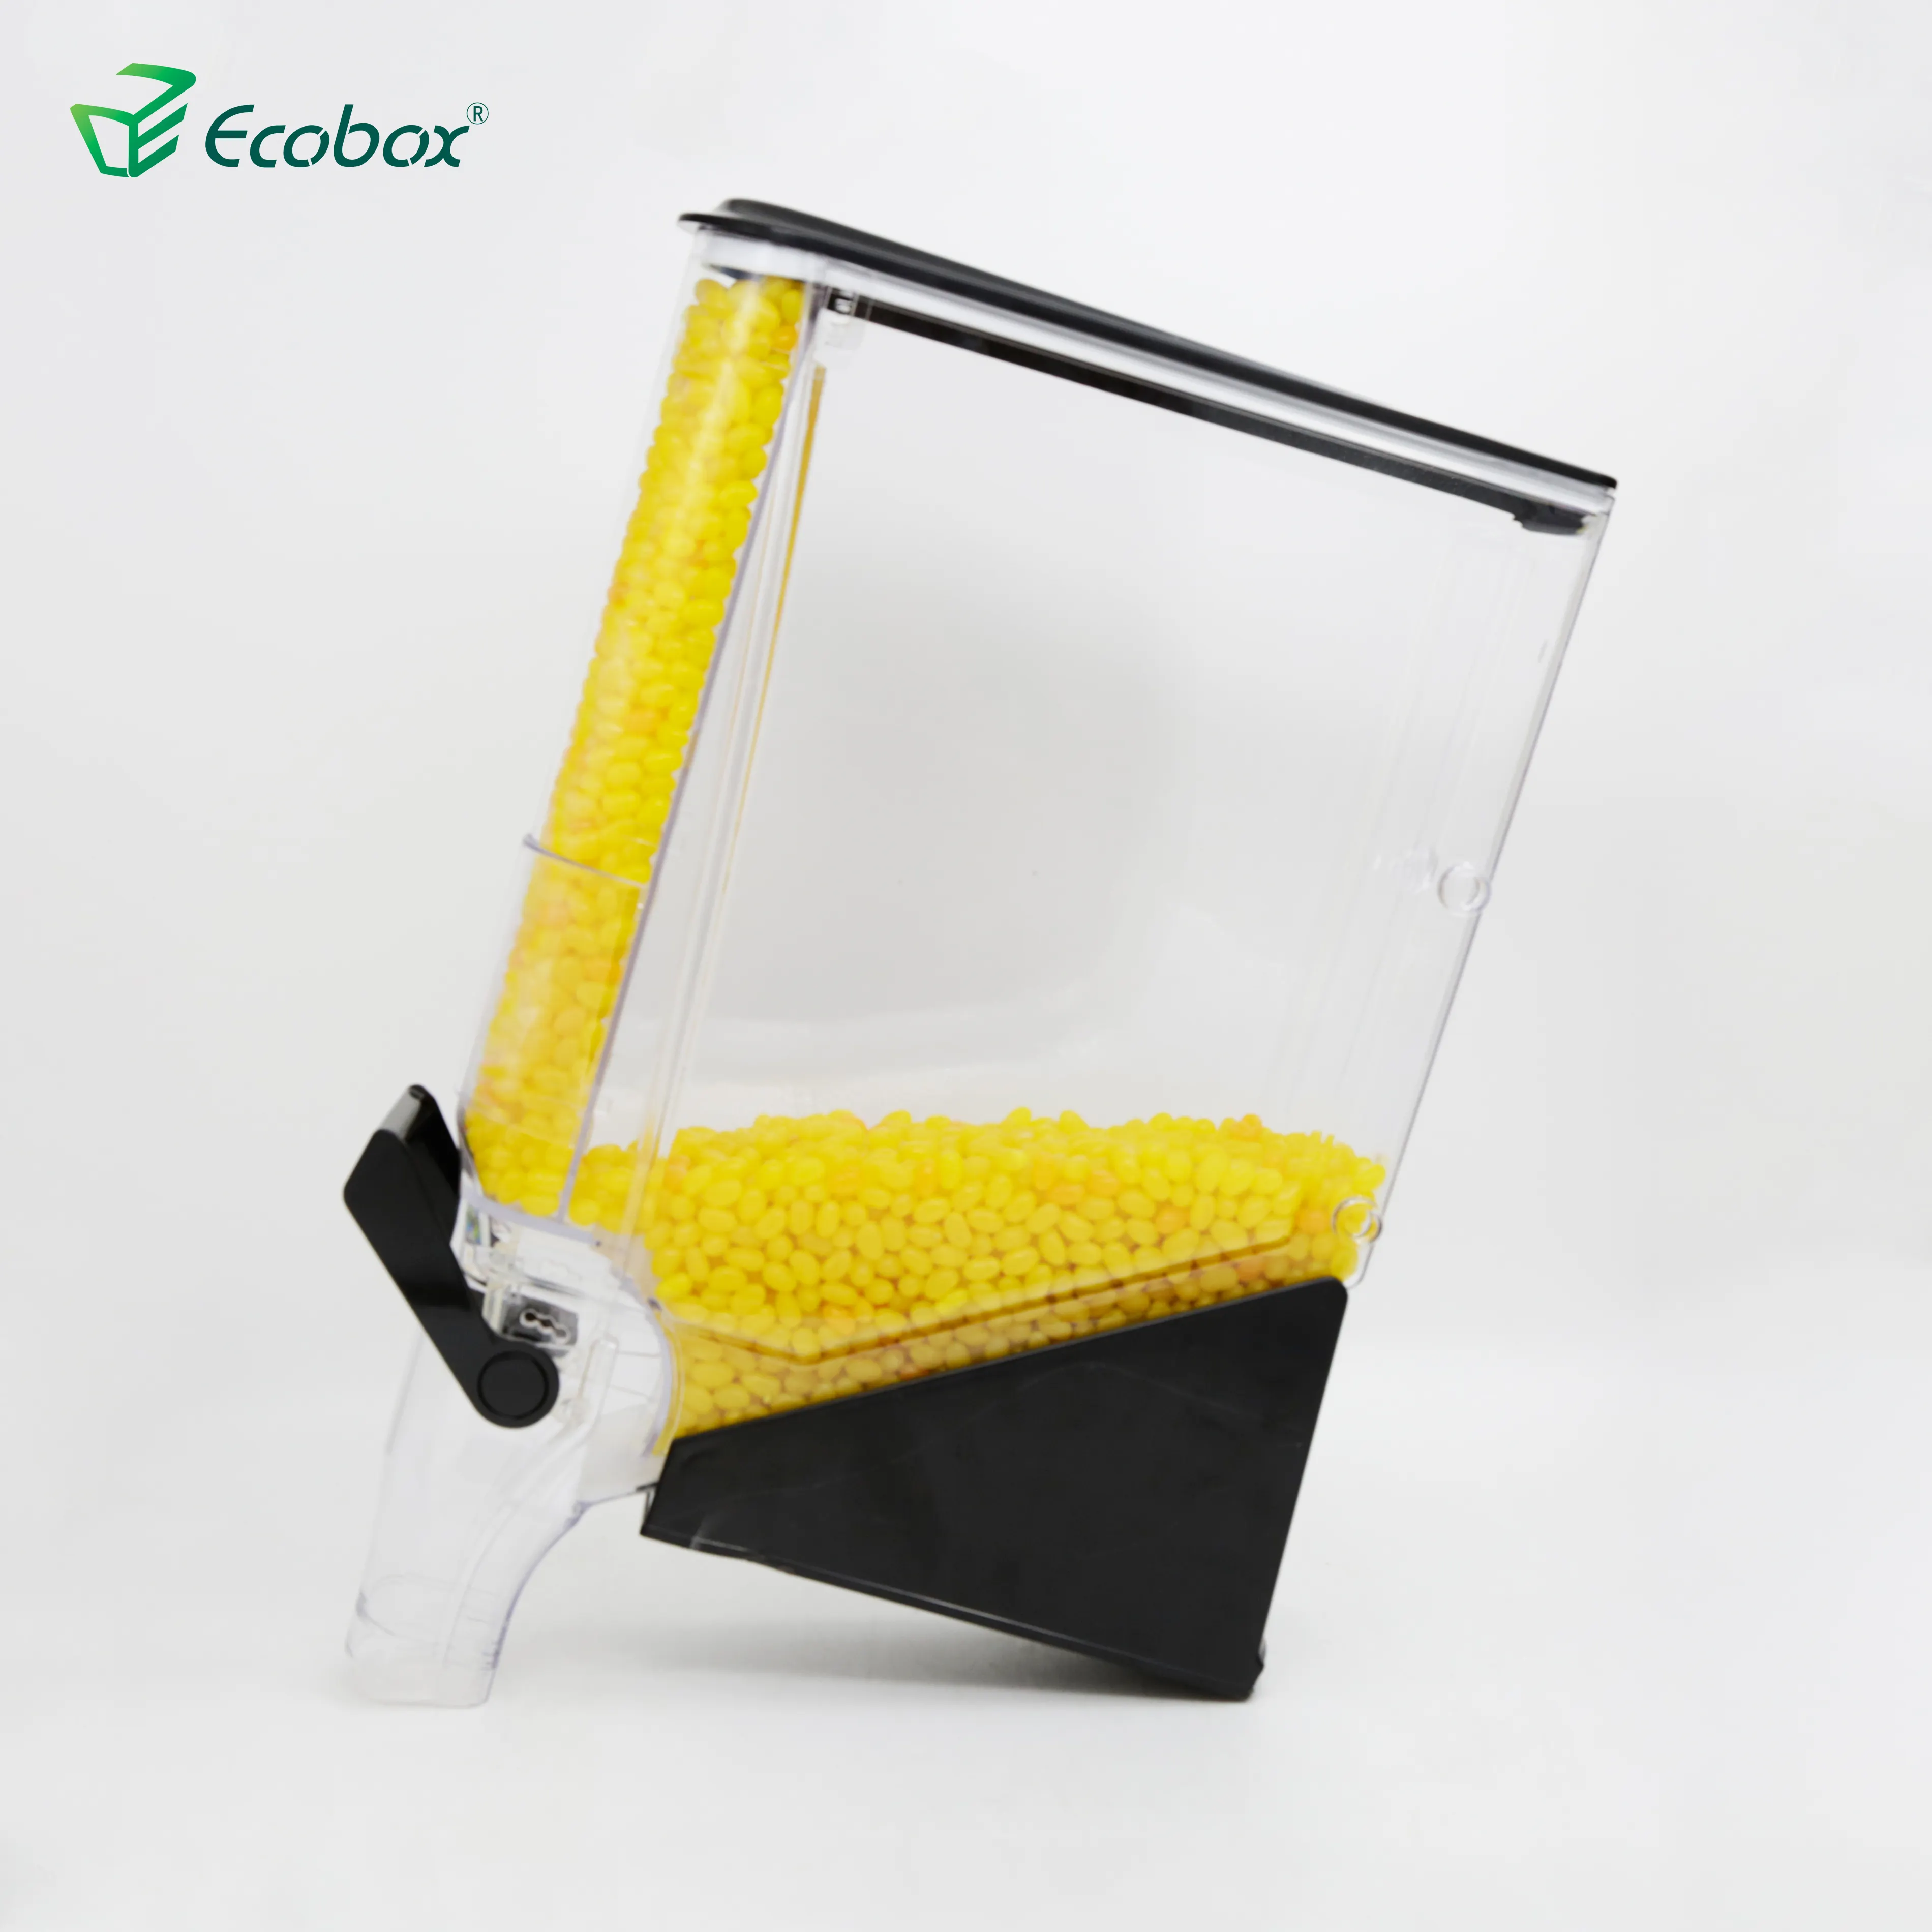 Ecobox Promosi Besar Dispenser Sereal Makanan Gravitasi Sereal Mur Toping Gandum Kering Pilihan dan Campuran untuk Toko Ritel